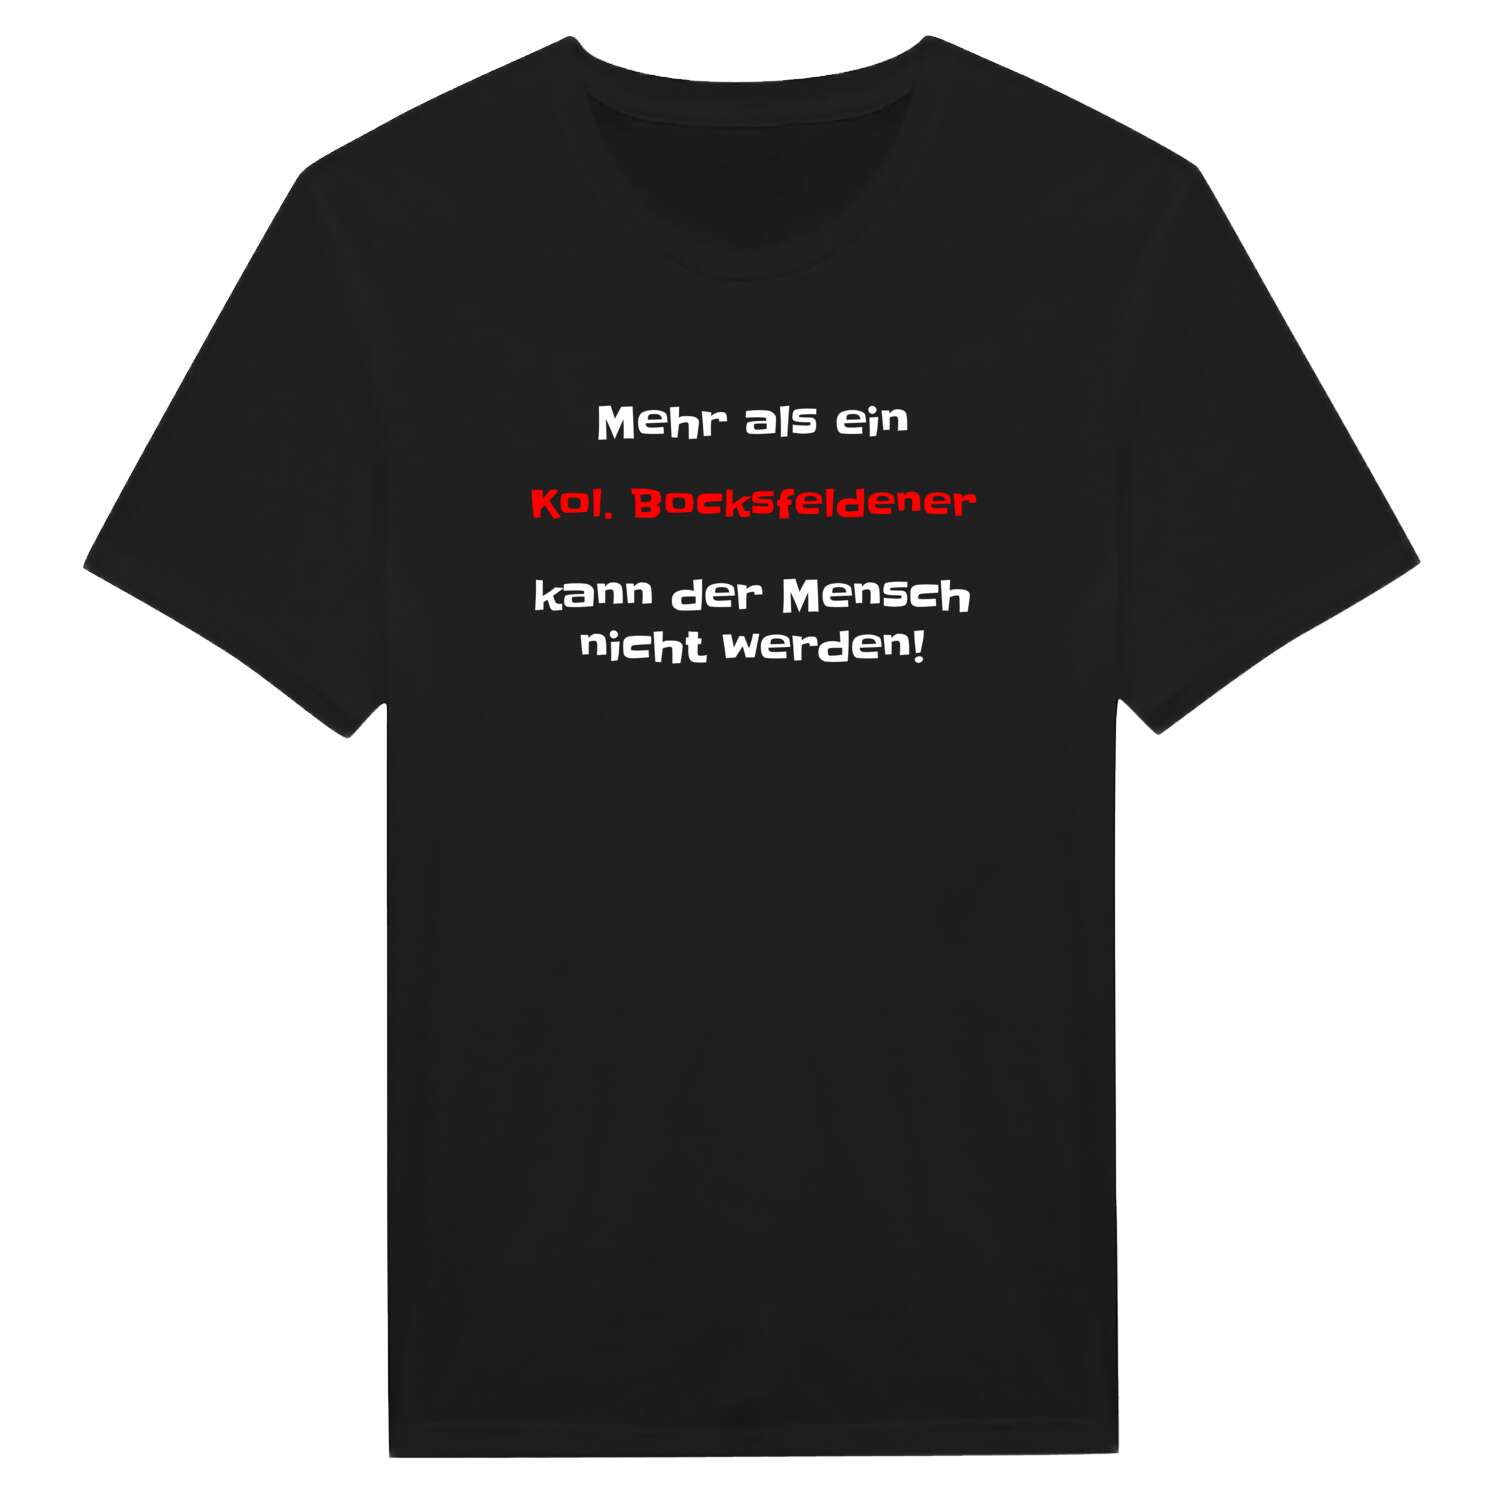 Kol. Bocksfelde T-Shirt »Mehr als ein«